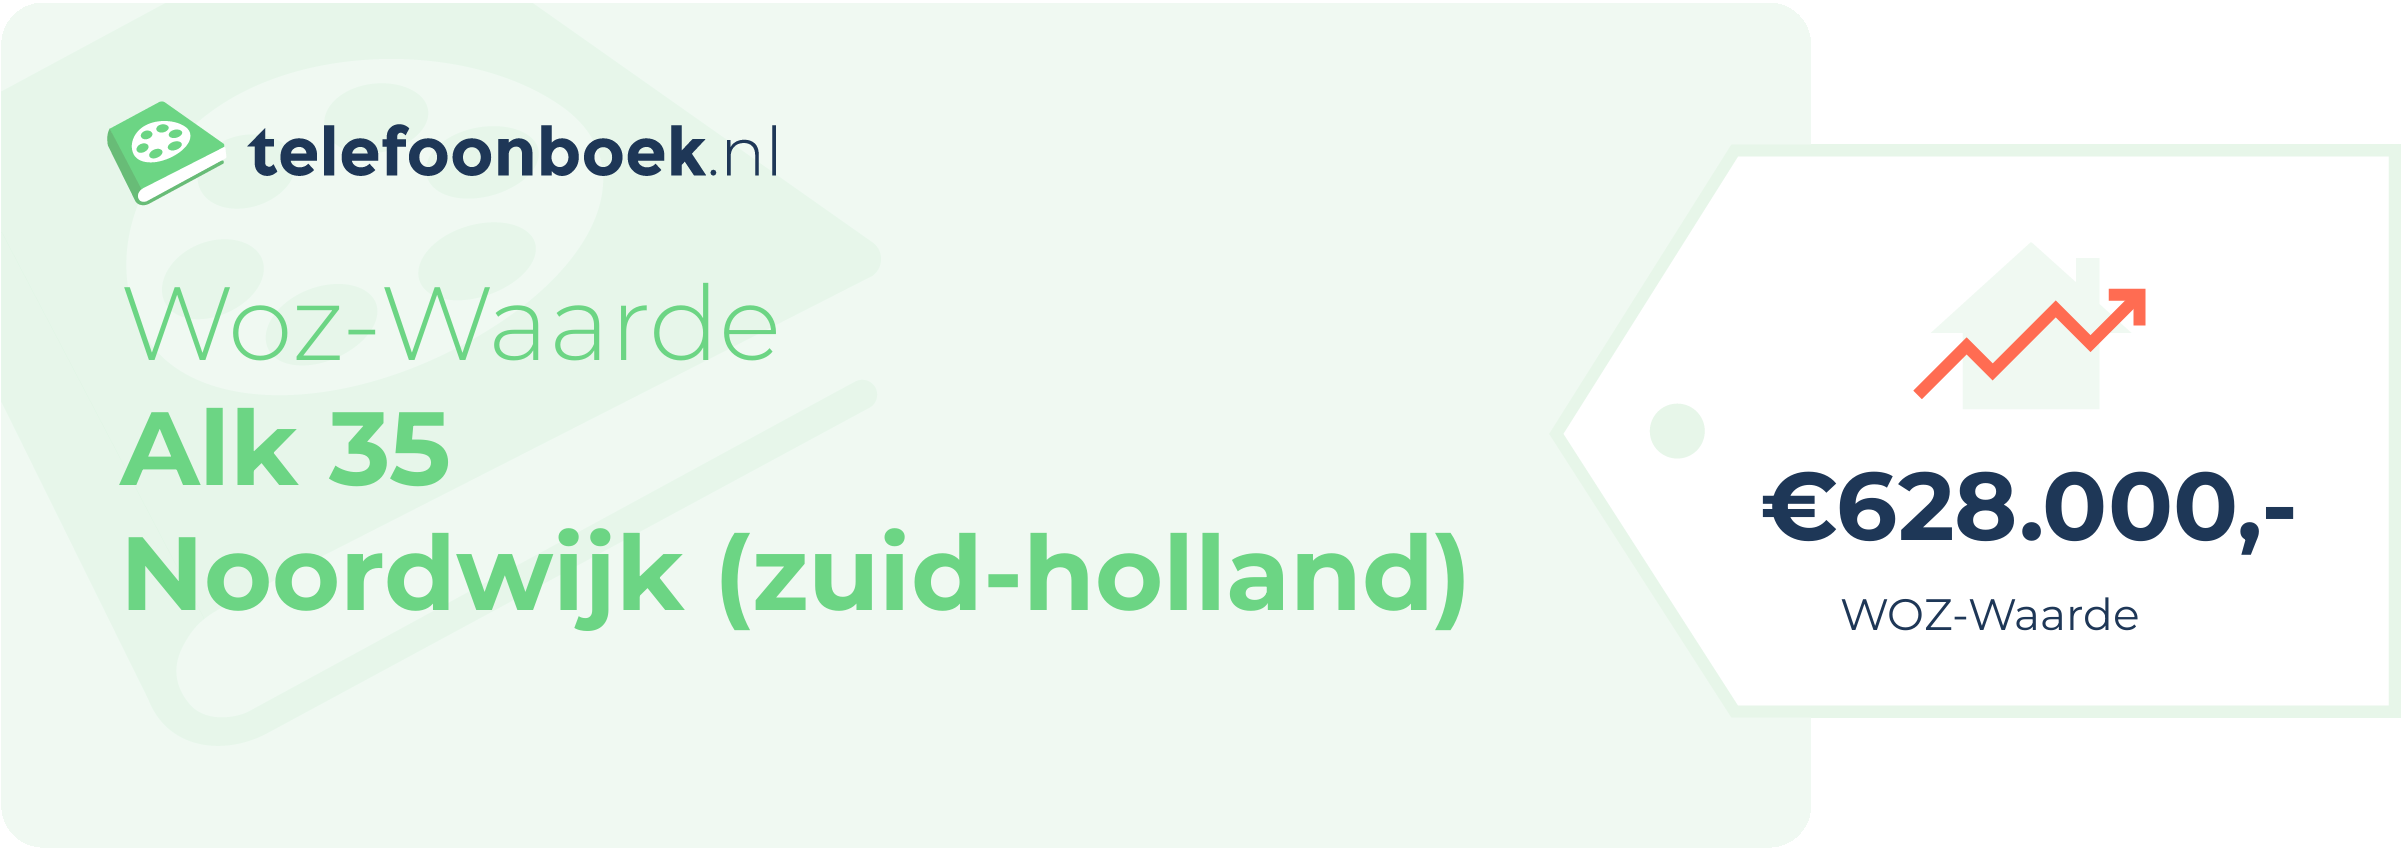 WOZ-waarde Alk 35 Noordwijk (Zuid-Holland)